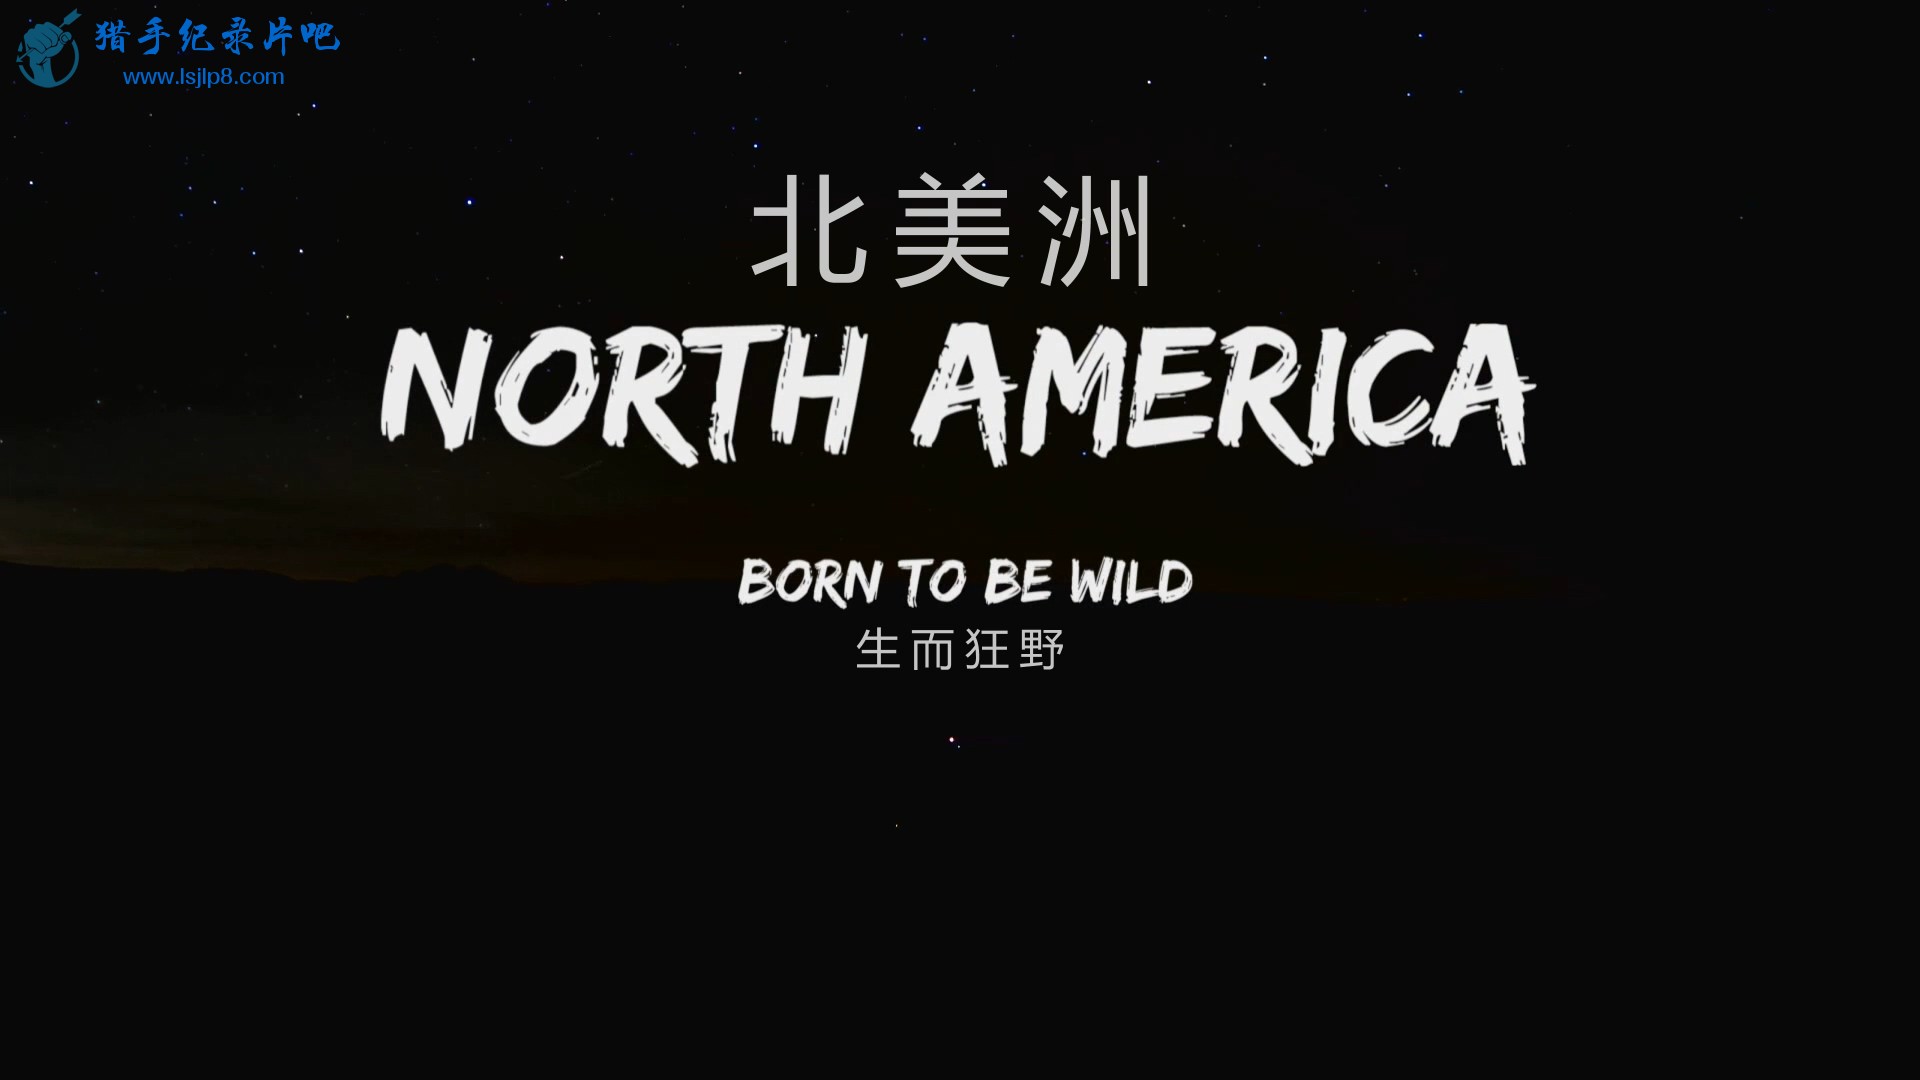 North.America.E01.Born.to.Be.Wild.1080p.BluRay.x264-WiKi.mkv_20200318_095426.630.jpg